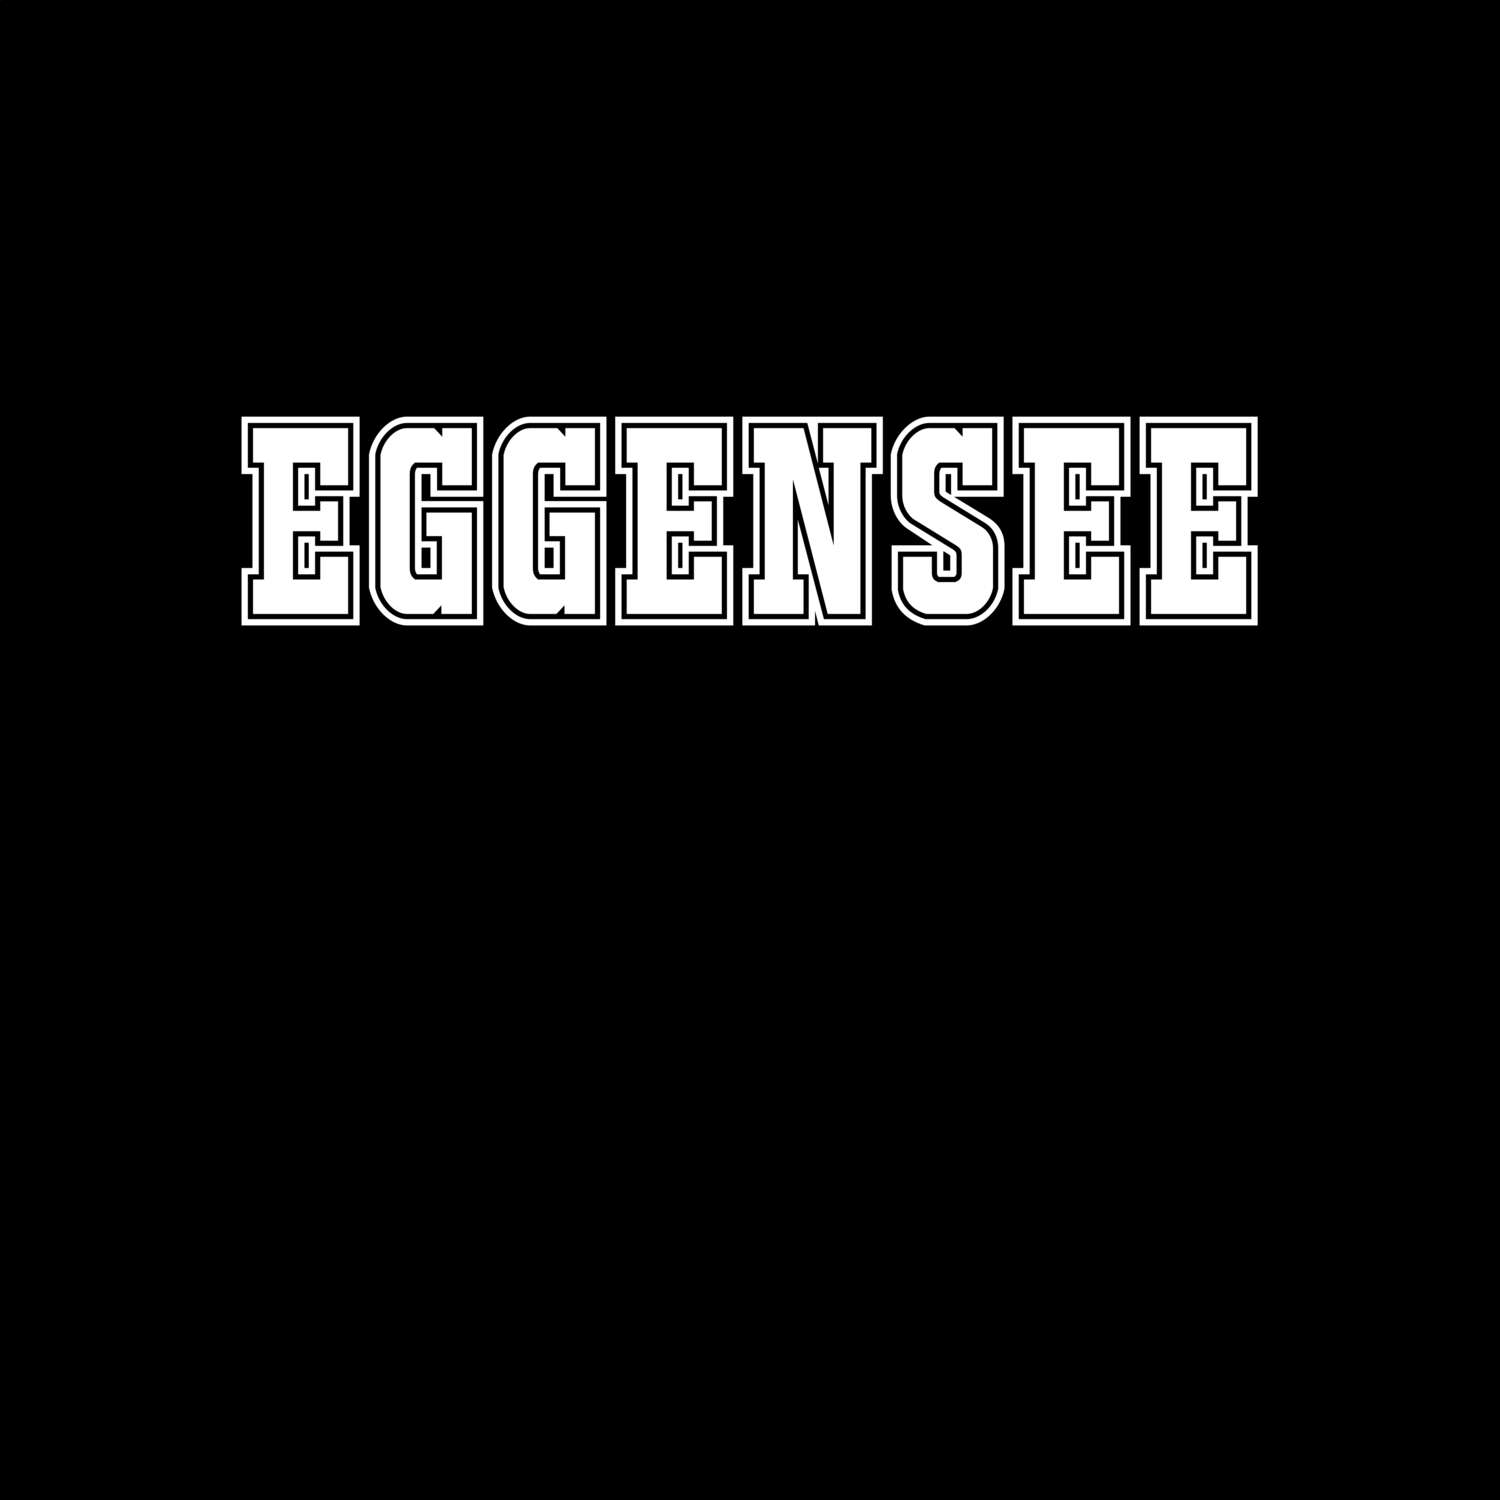 Eggensee T-Shirt »Classic«